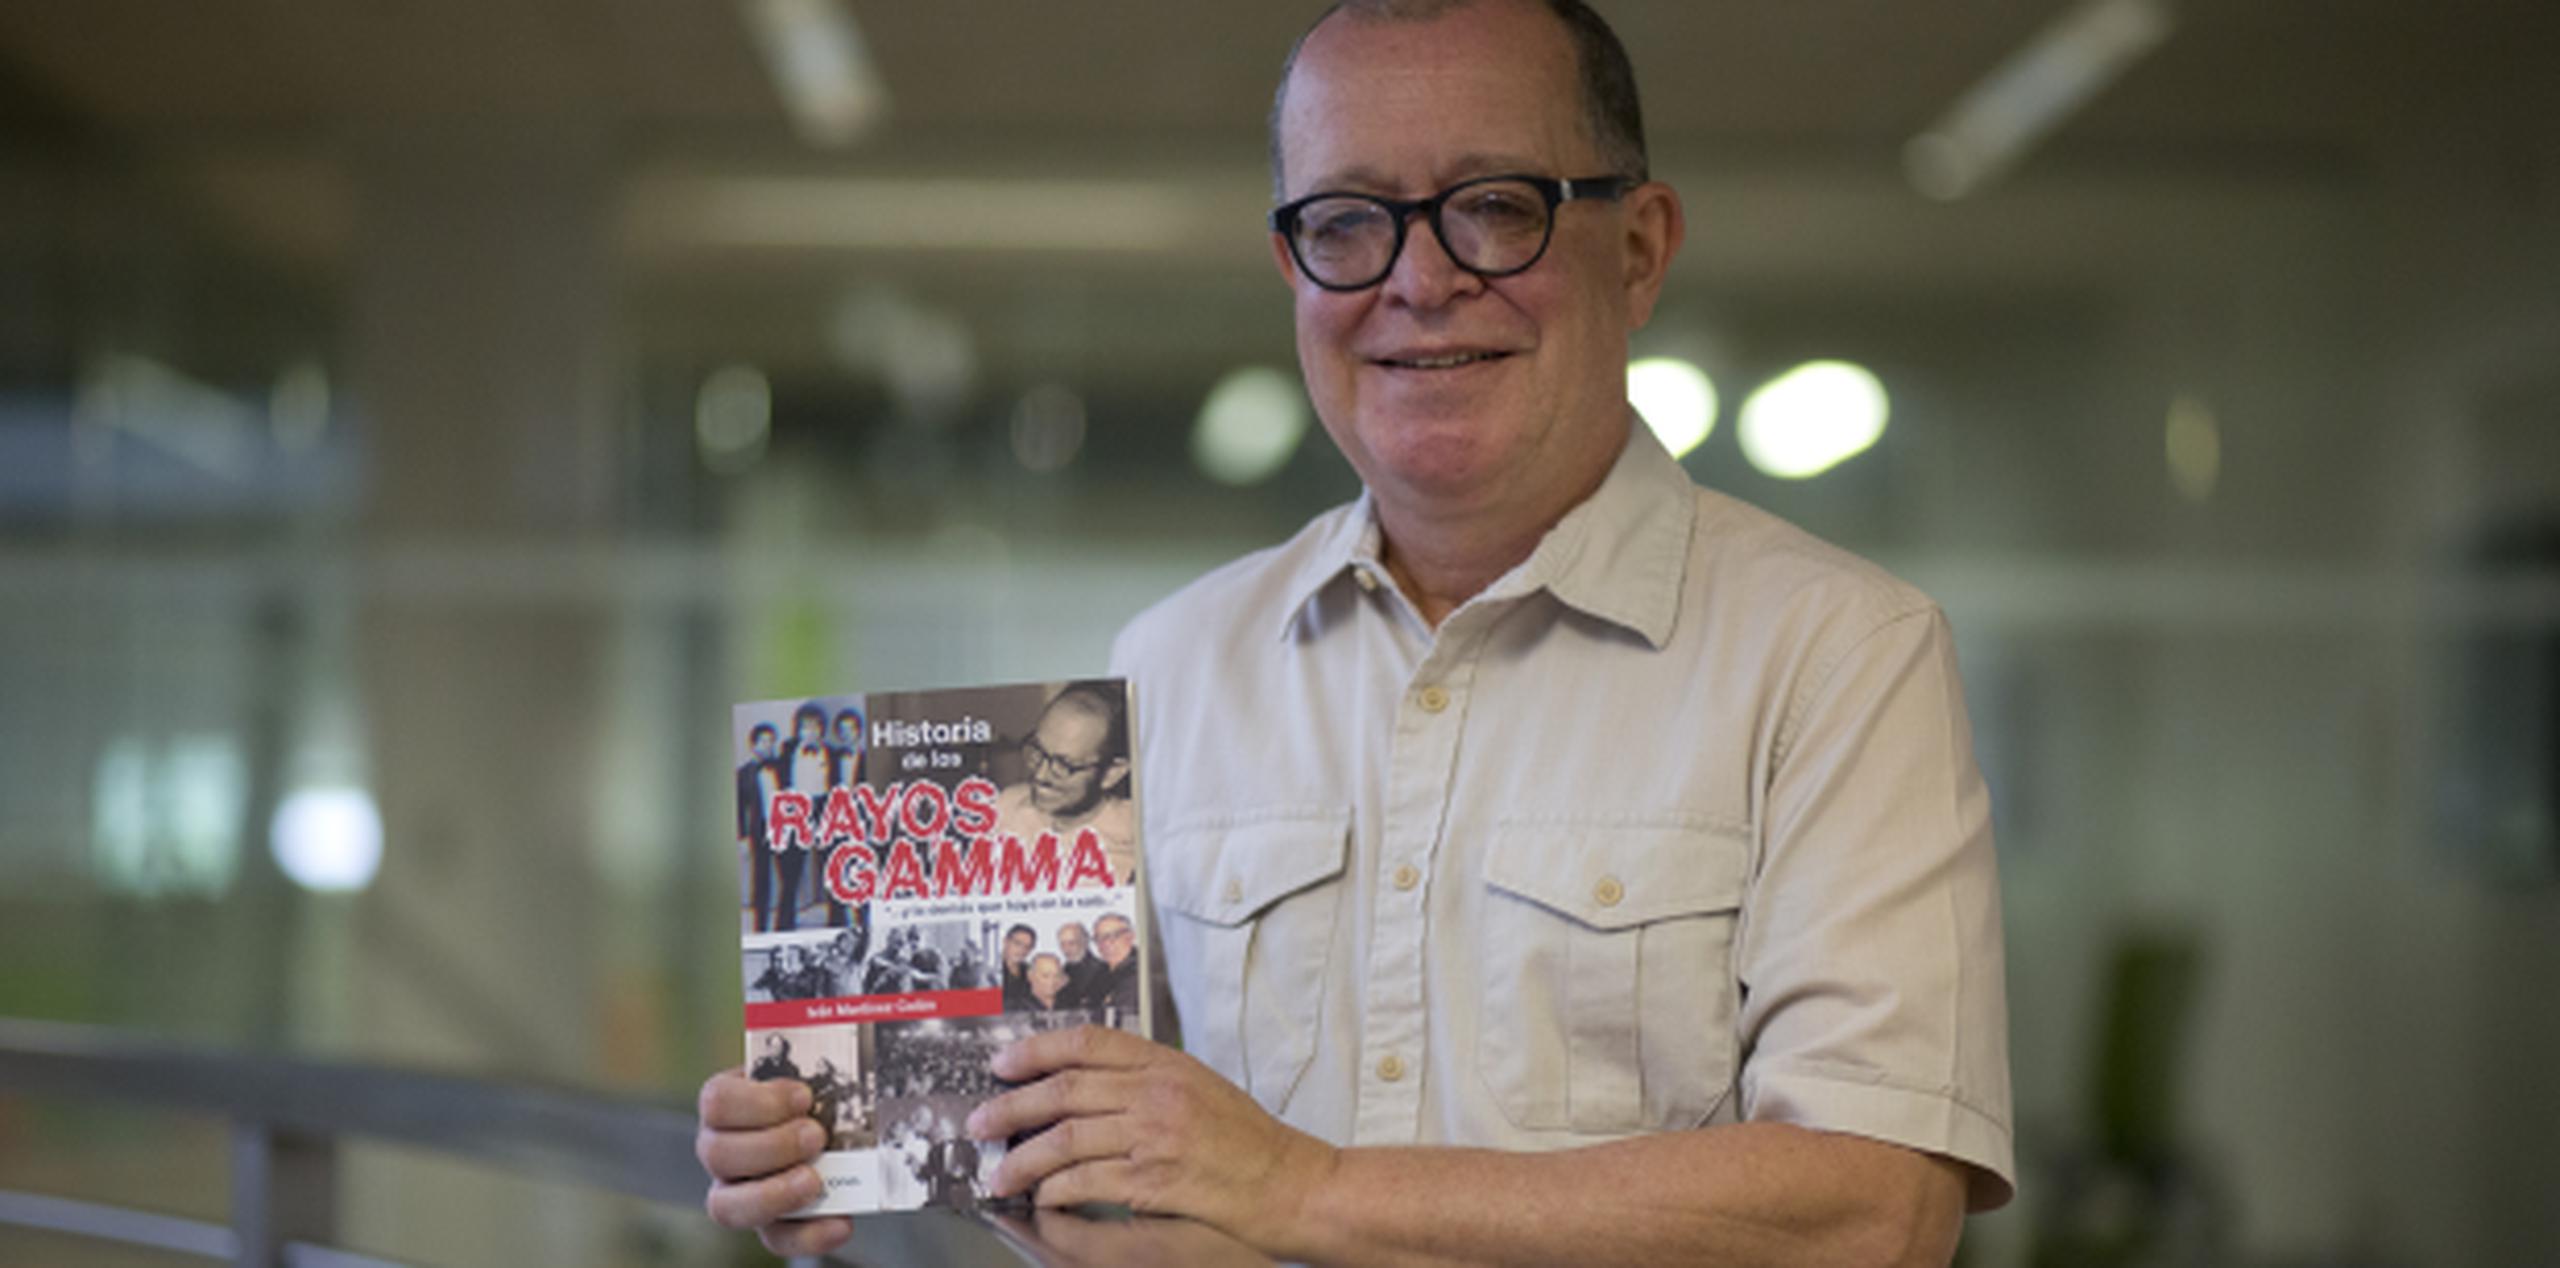 El músico y profesor Iván Martínez con el libro sobre los Gamma. (Foto/Teresa Canino)